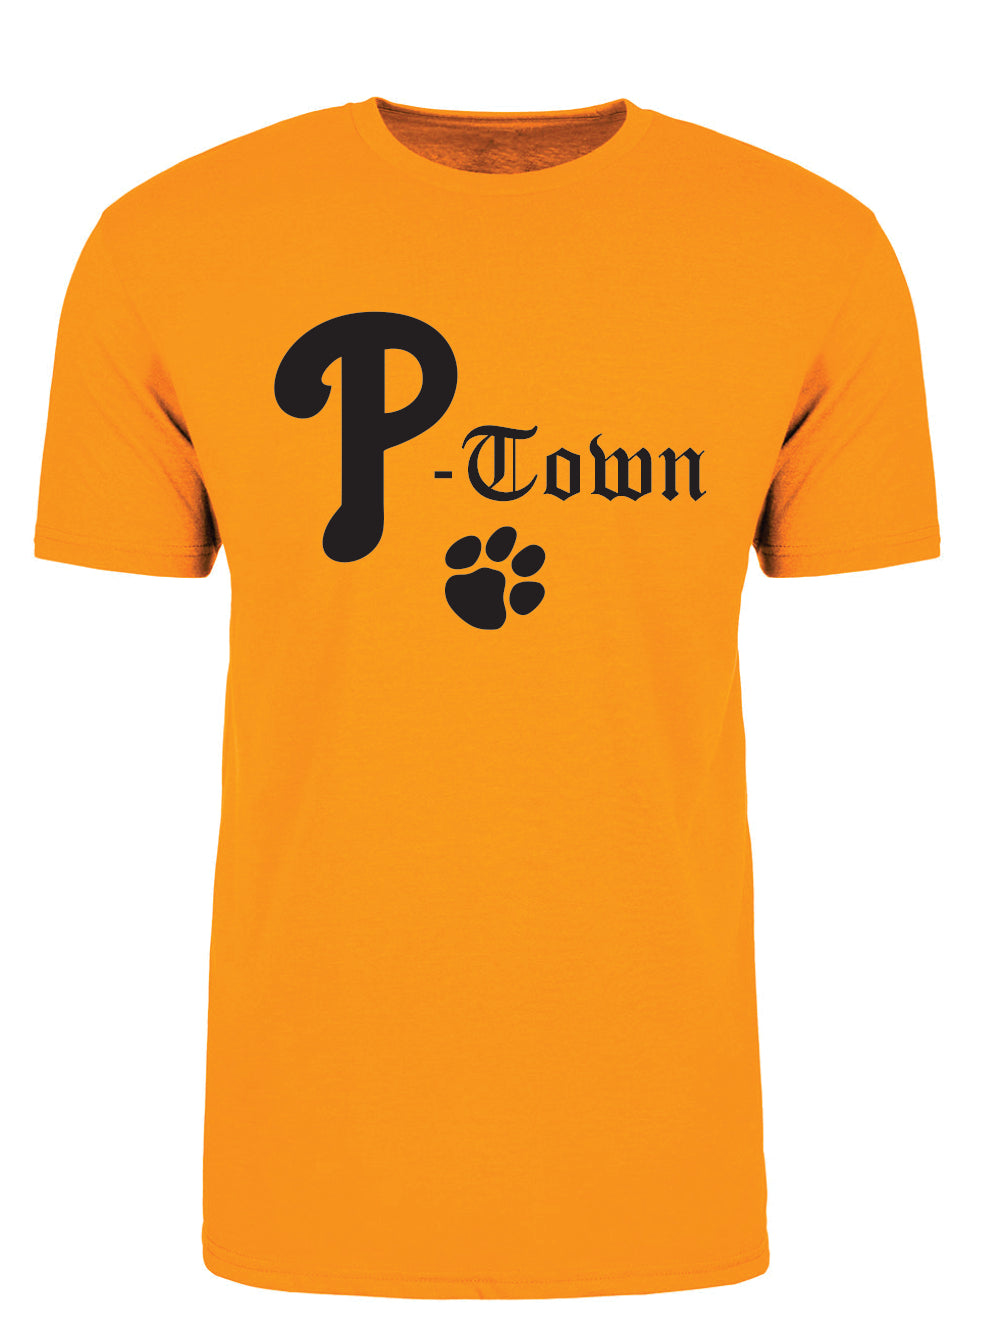 P-Town T-shirt